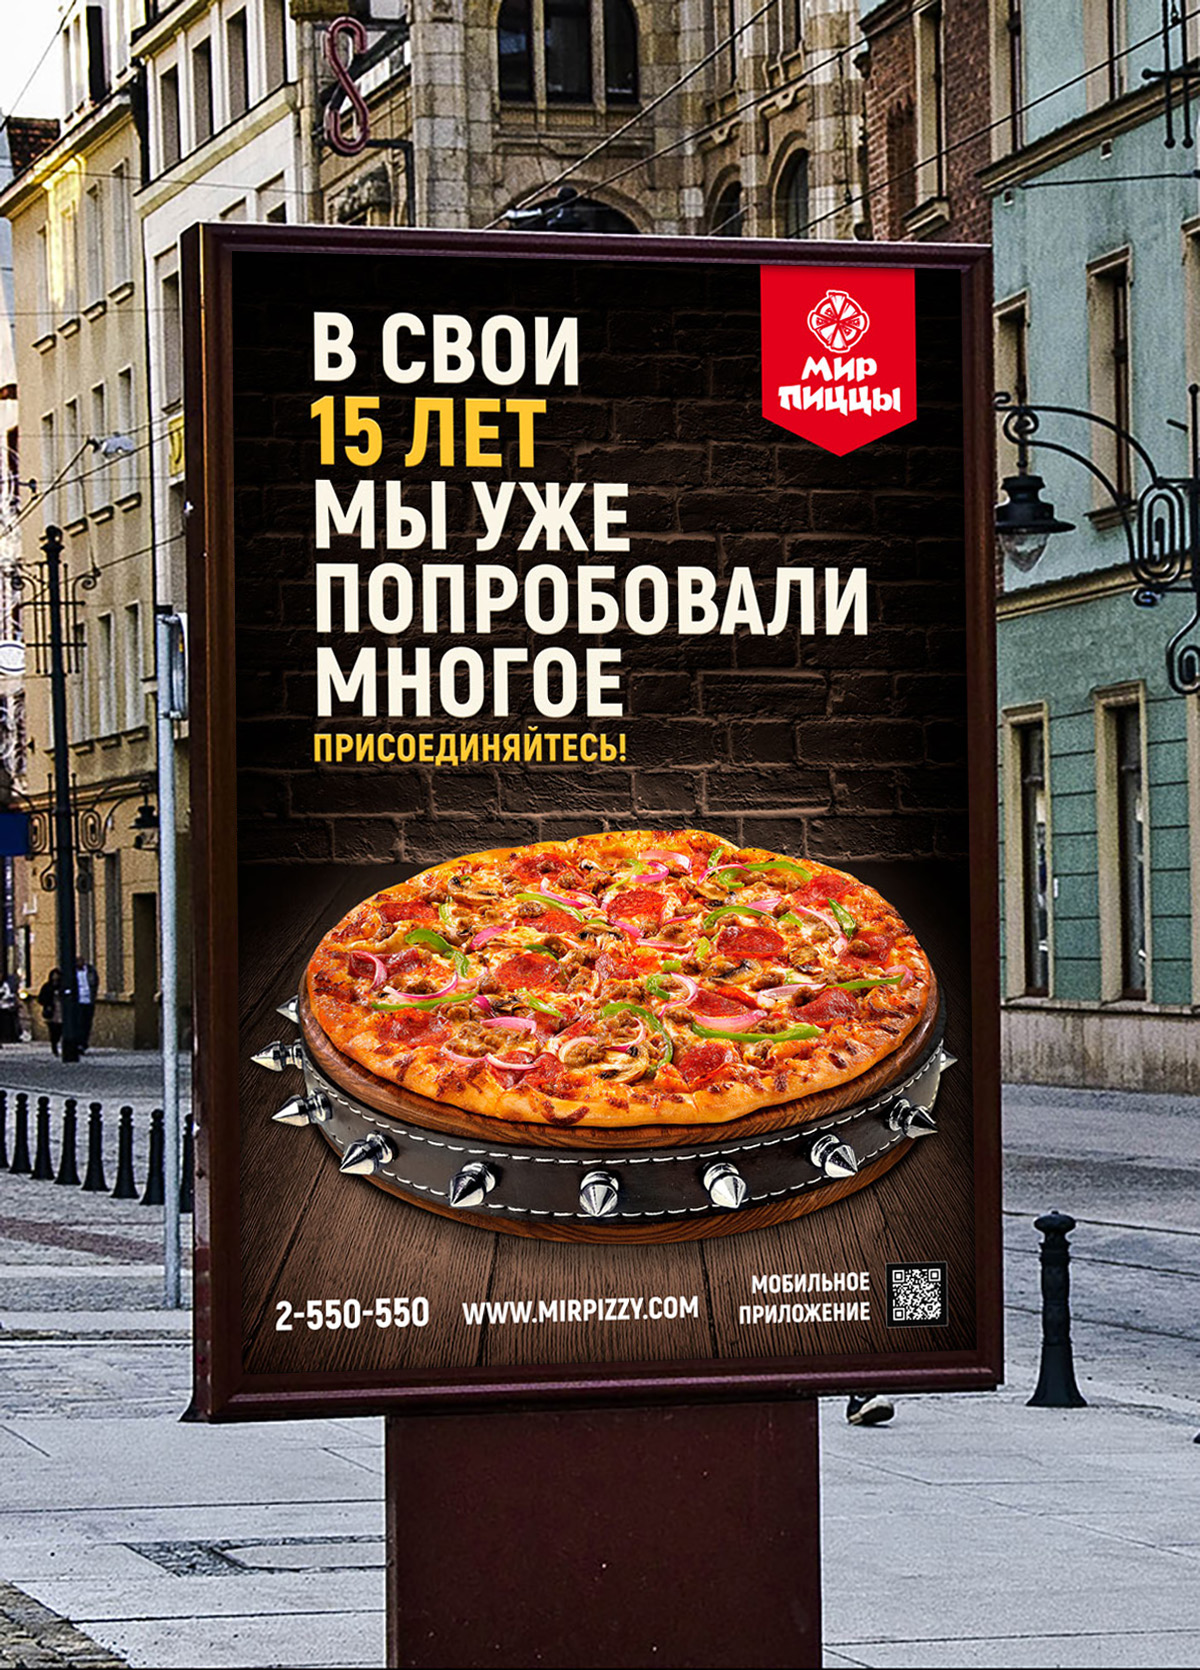 Рекламный ролик пицца. Реклама пиццы. Рекламный баннер пиццерии. Наружная реклама пиццерии. Рекламный баннер пицца.